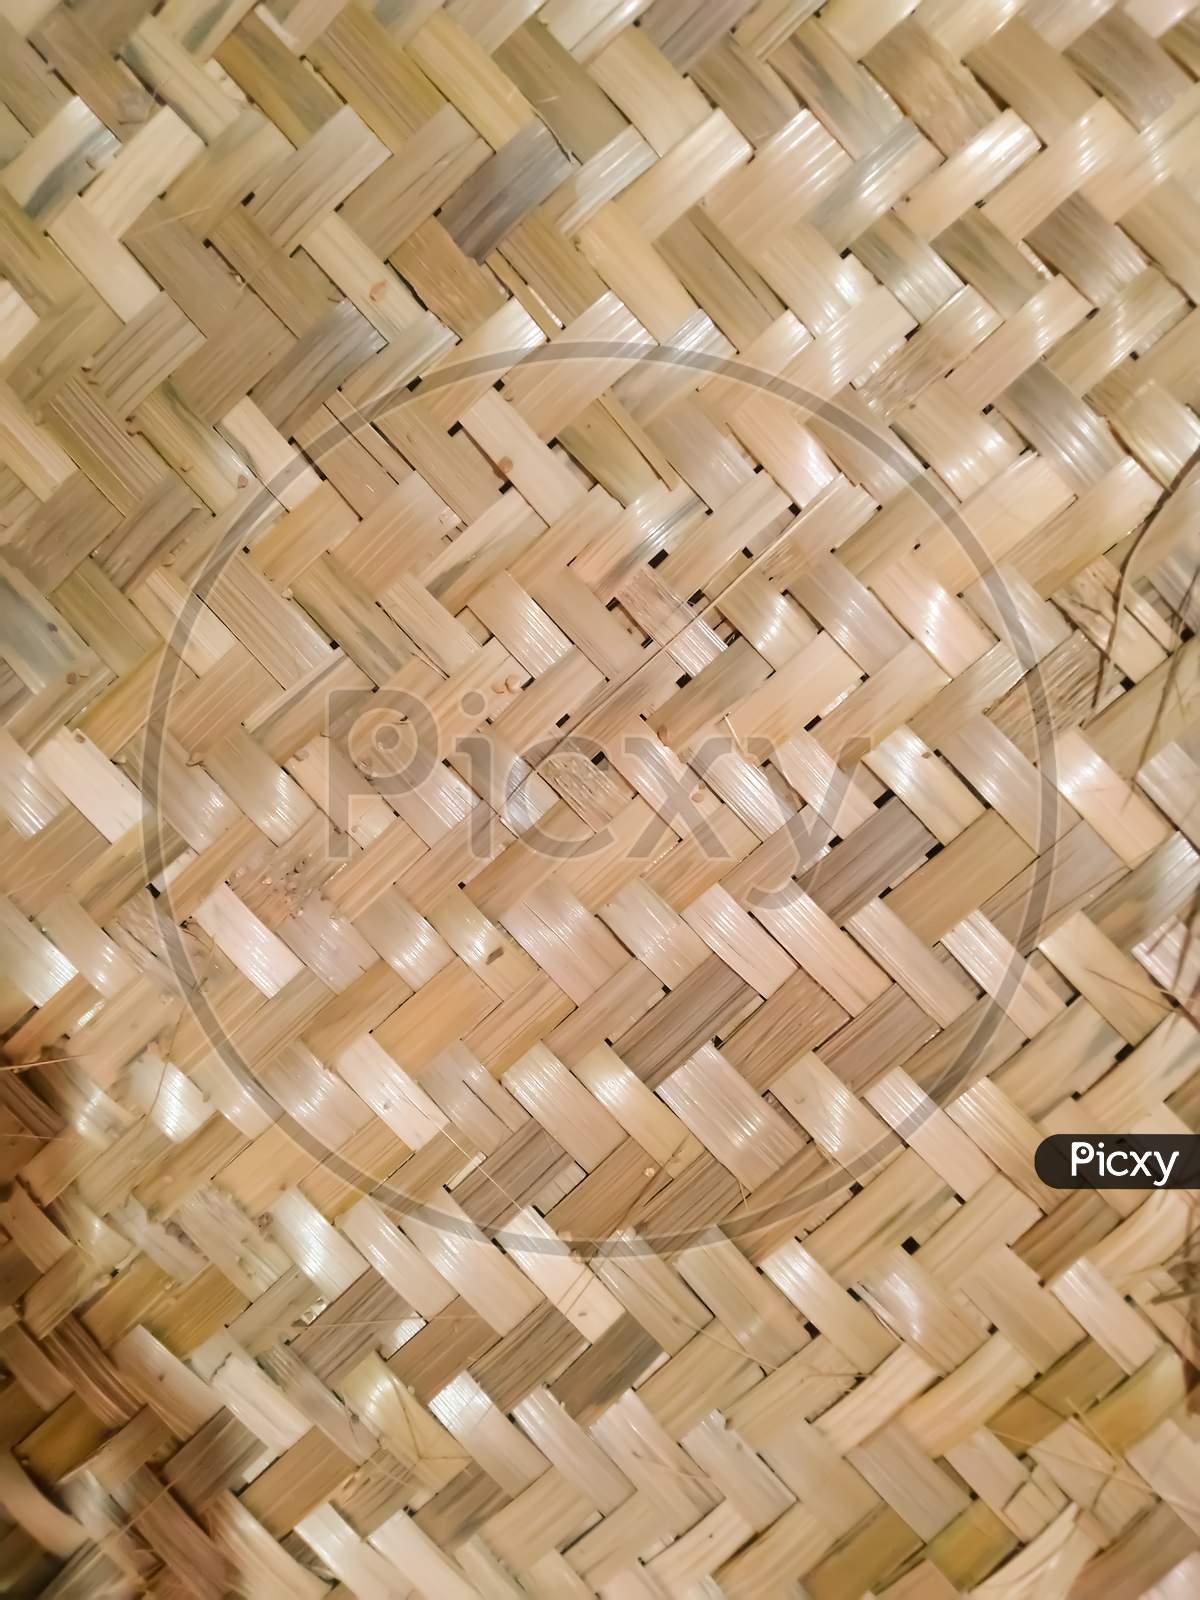 Bamboo mats